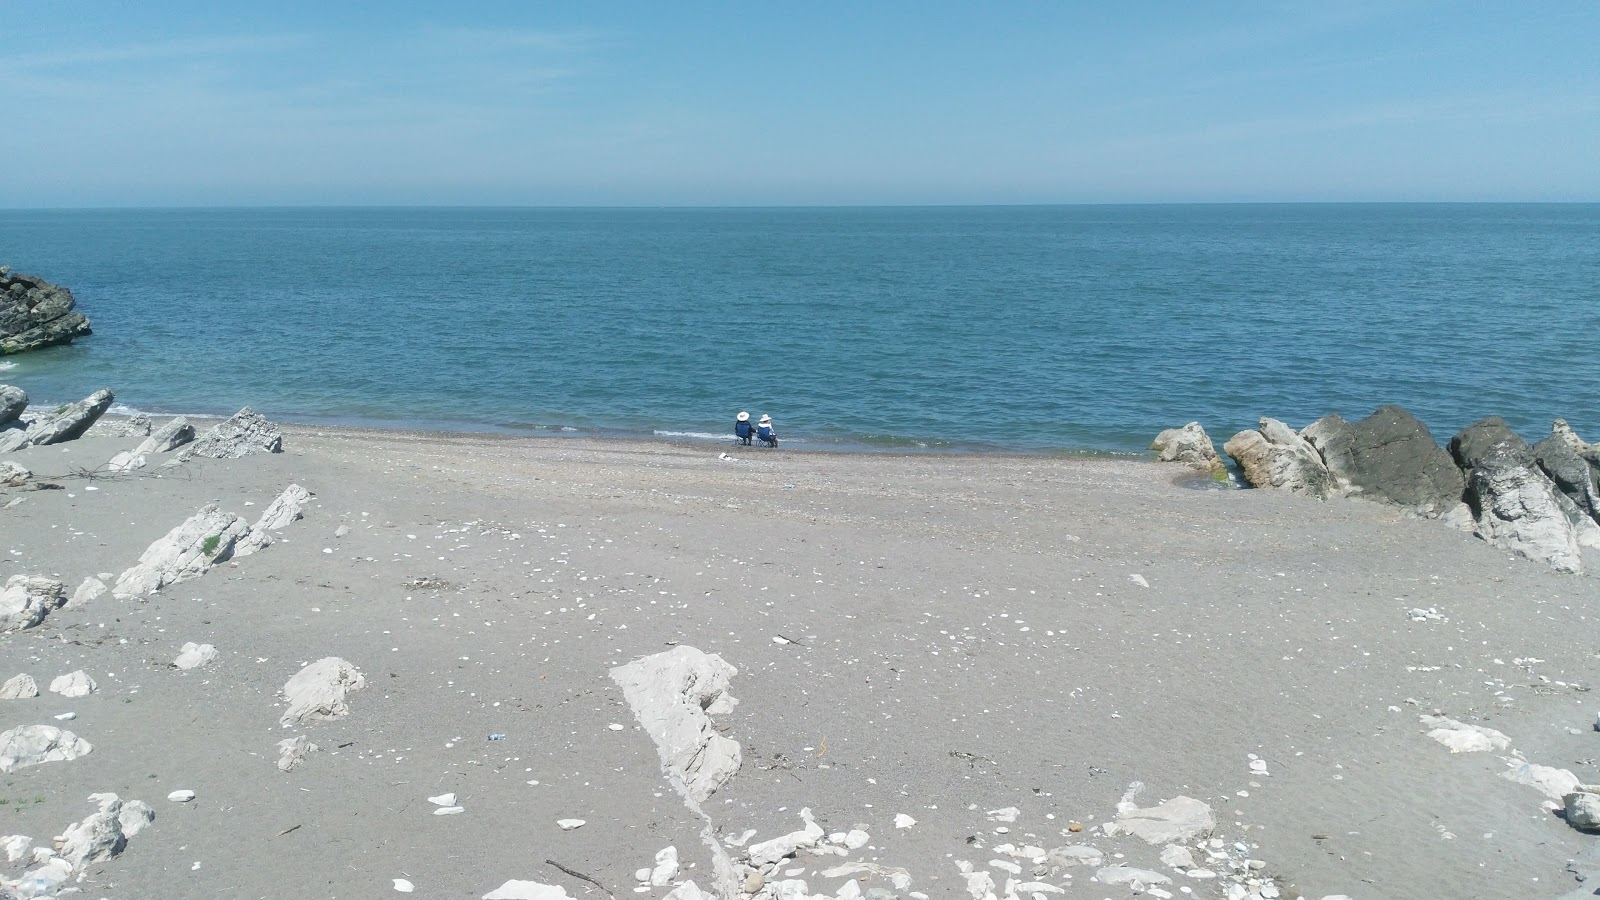 Fotografie cu Kadinlar Plaji cu o suprafață de nisip gri